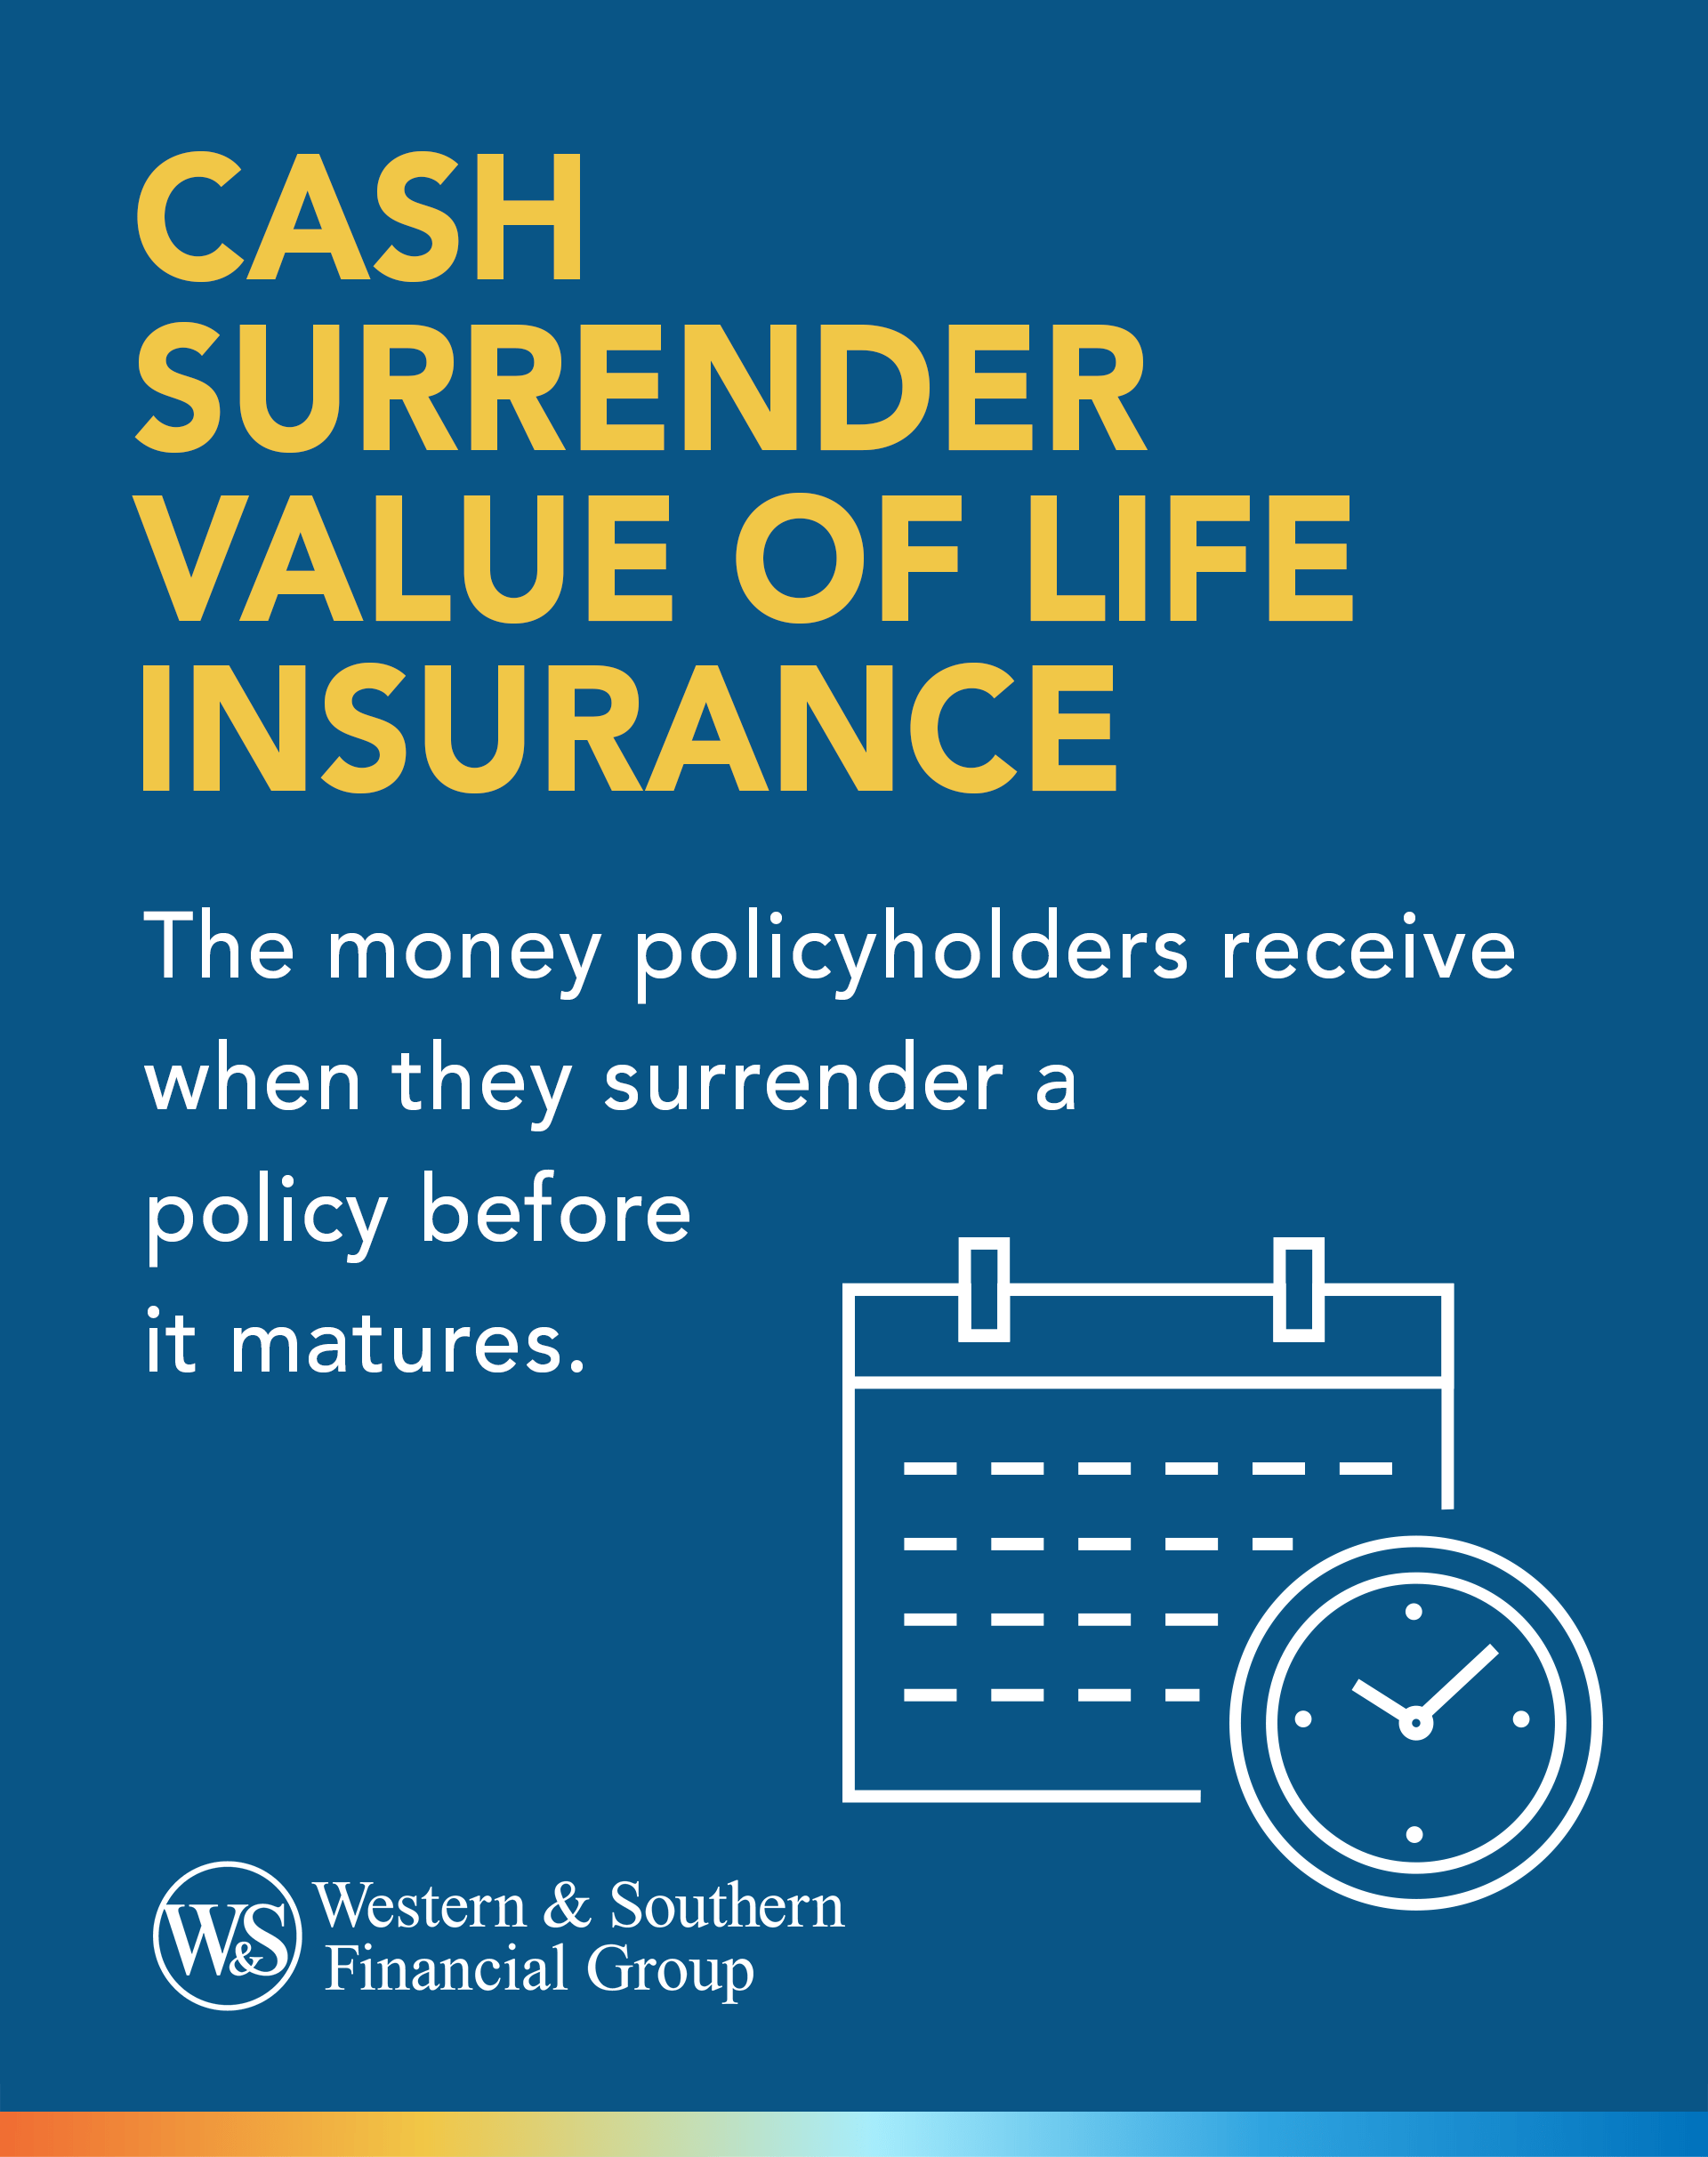 Cash Surrender Value of Life Insurance Definition